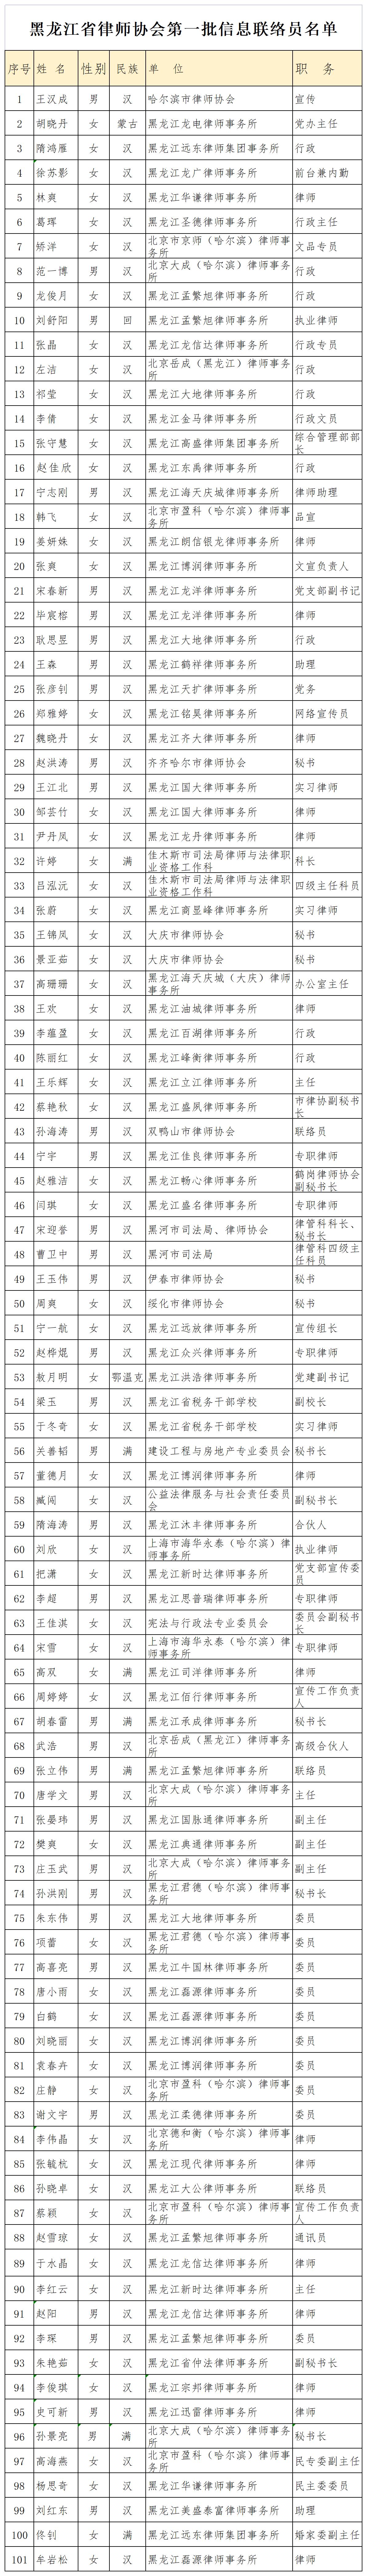 黑龙江省律师协会第一批信息联络员名单.jpeg